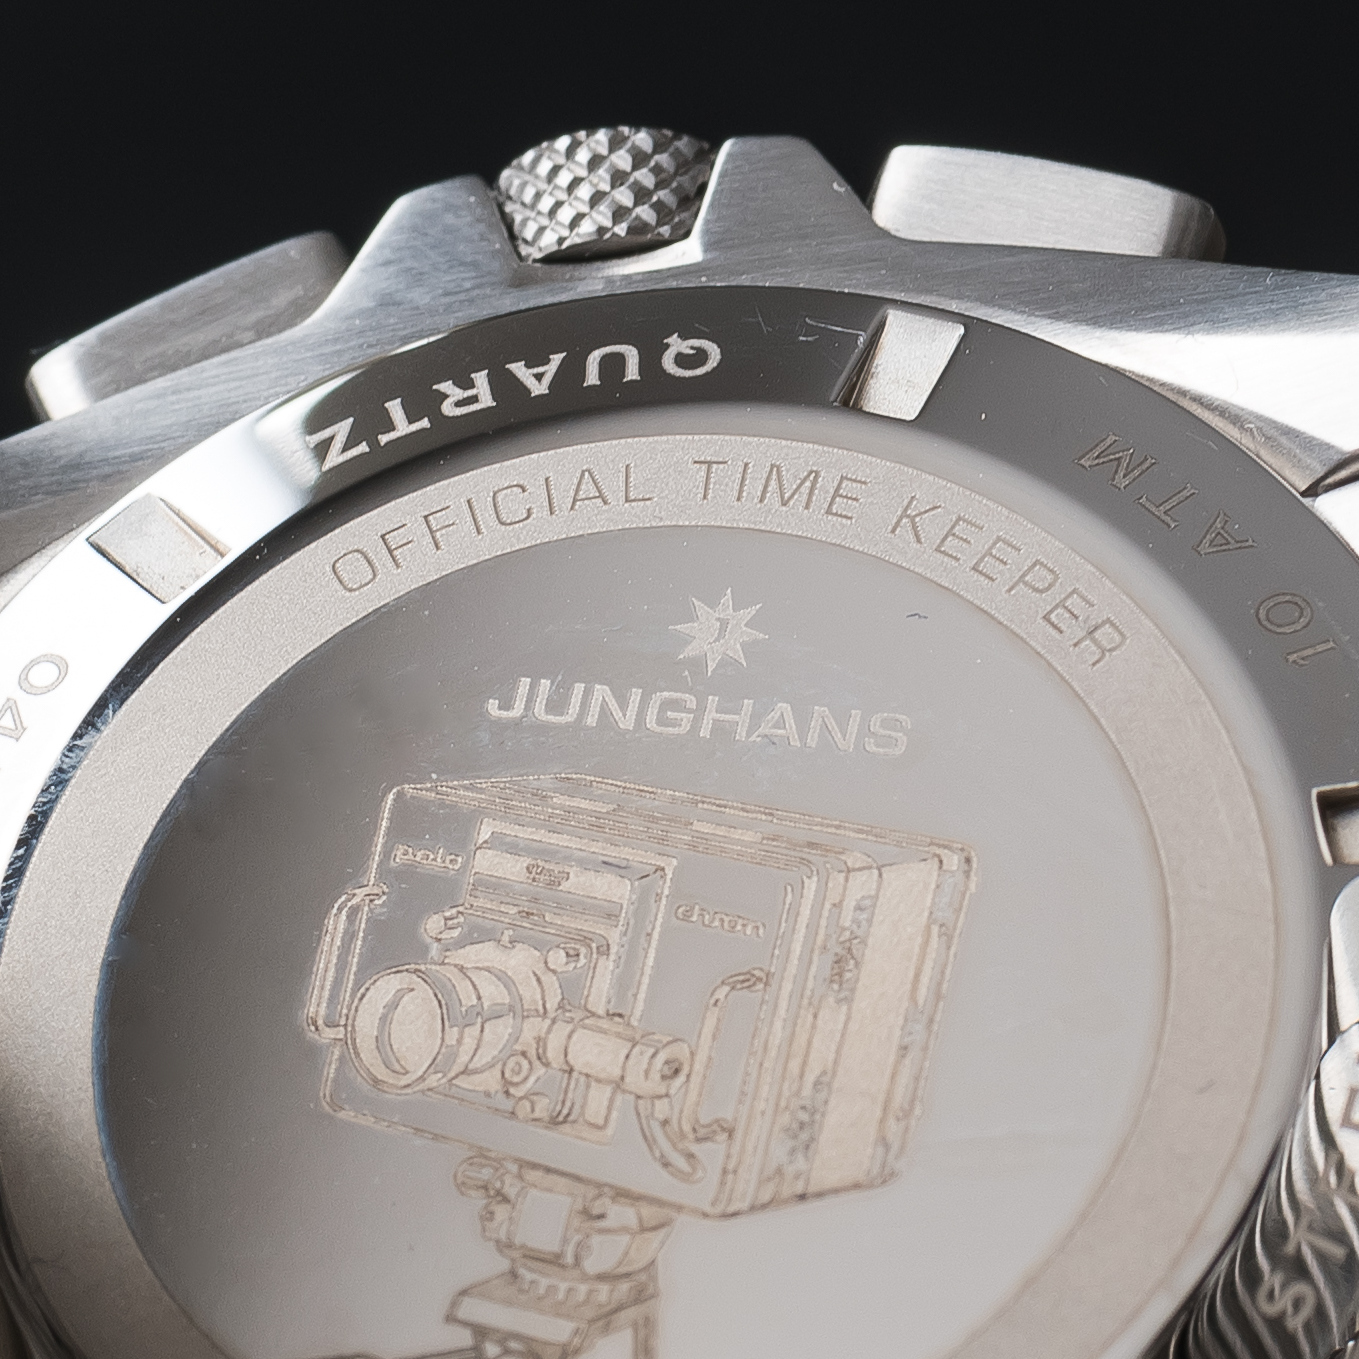 Junghans 1972 Chronoscope Quartz Chronometer watch 041/4262.44